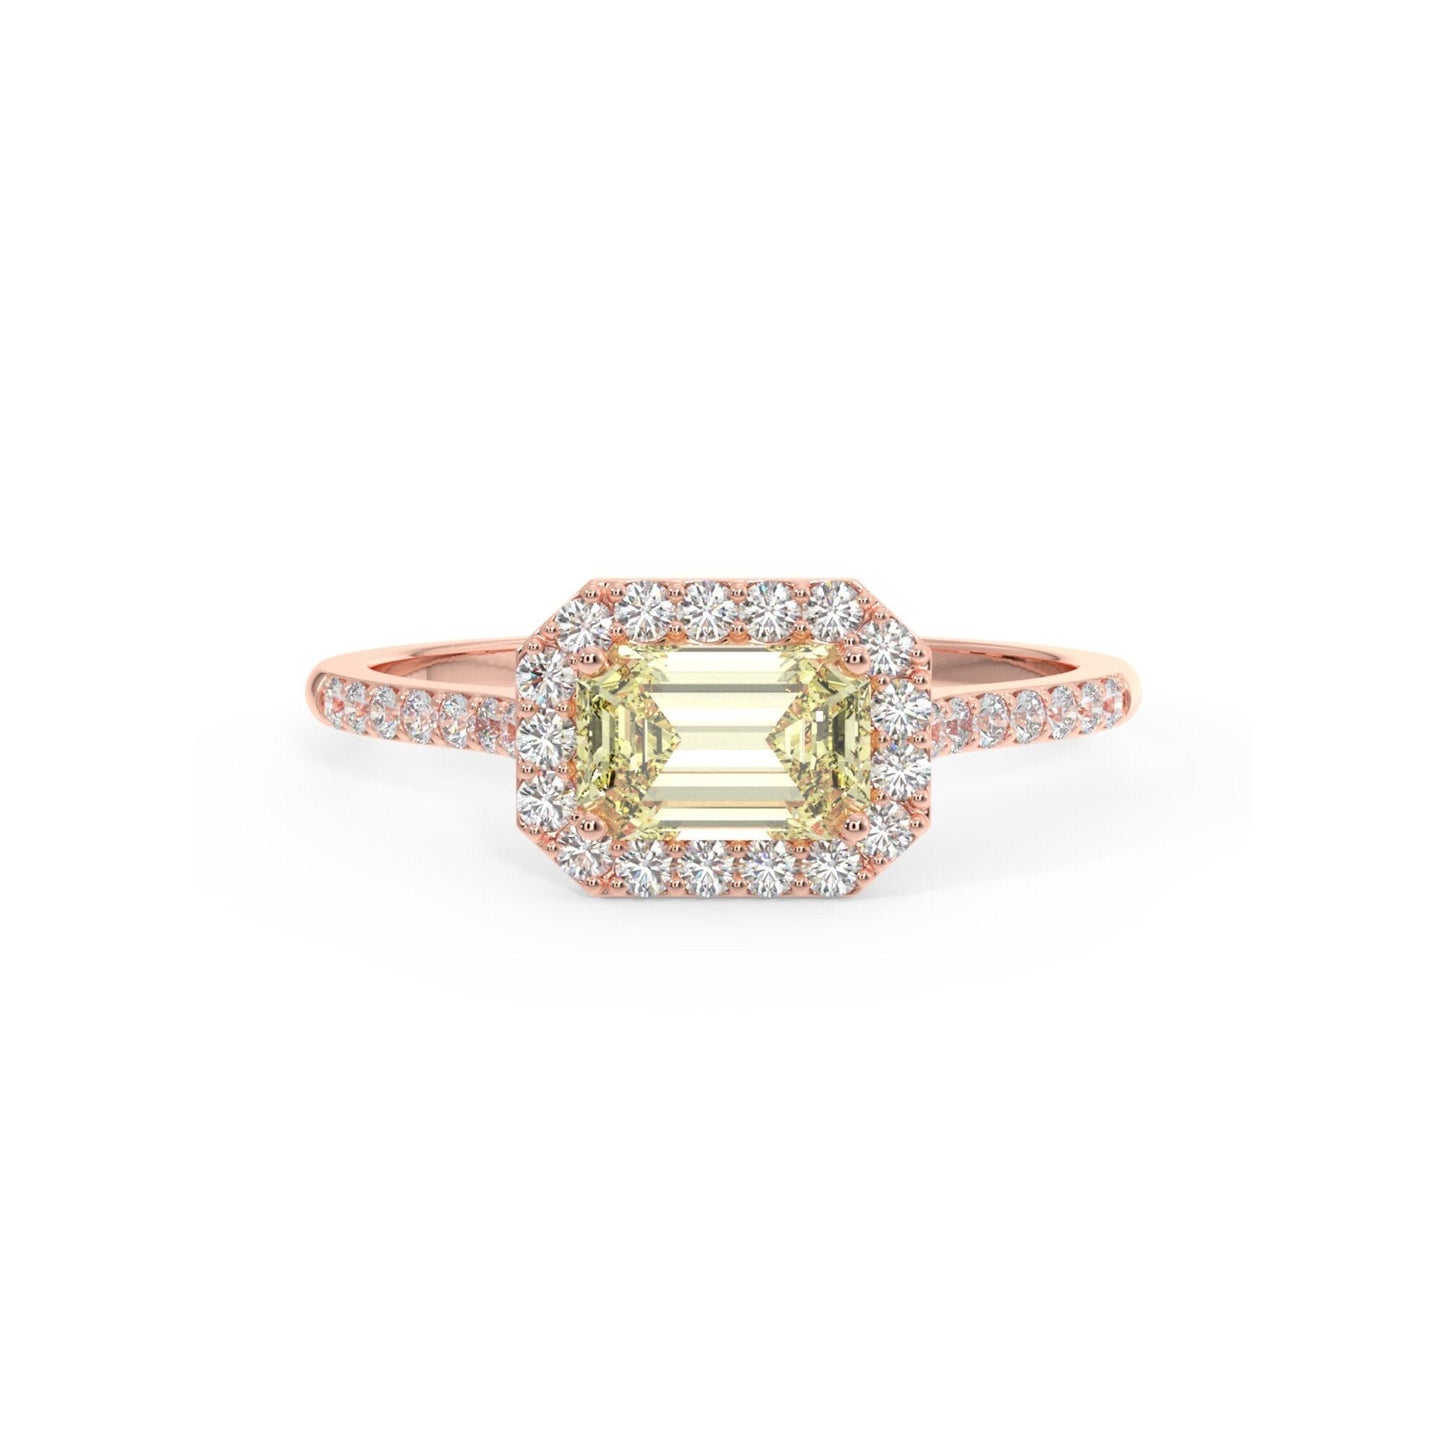 Emerald-Cut Peridot Engagement Ring